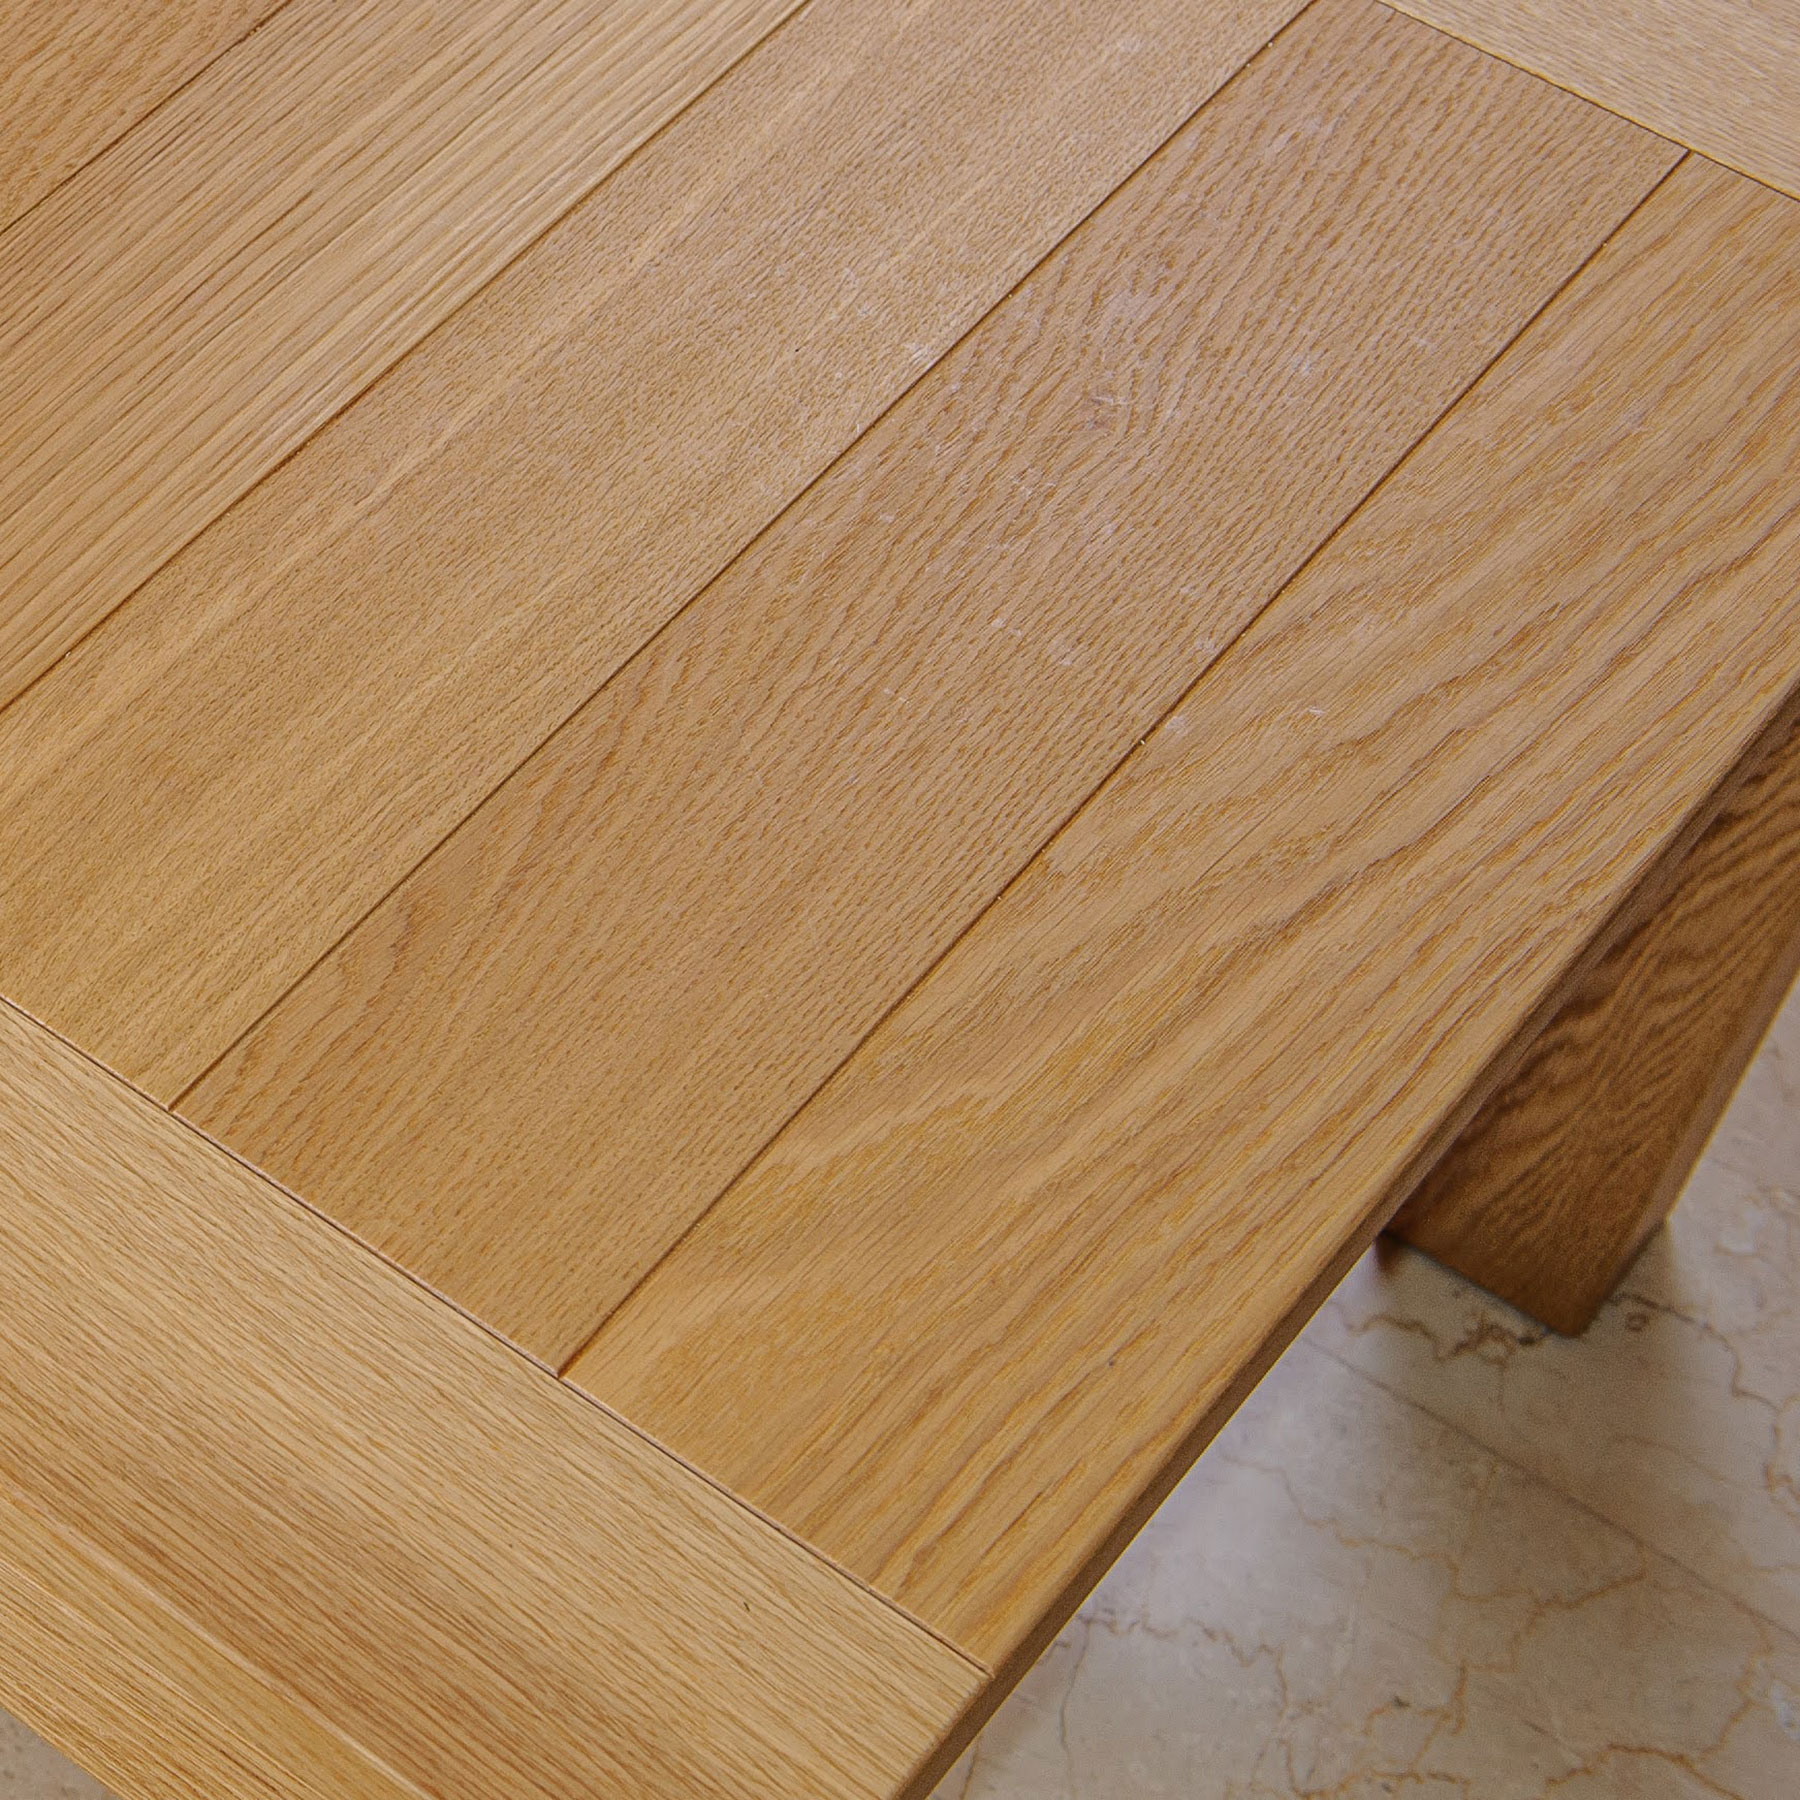 Stugna wooden table 2